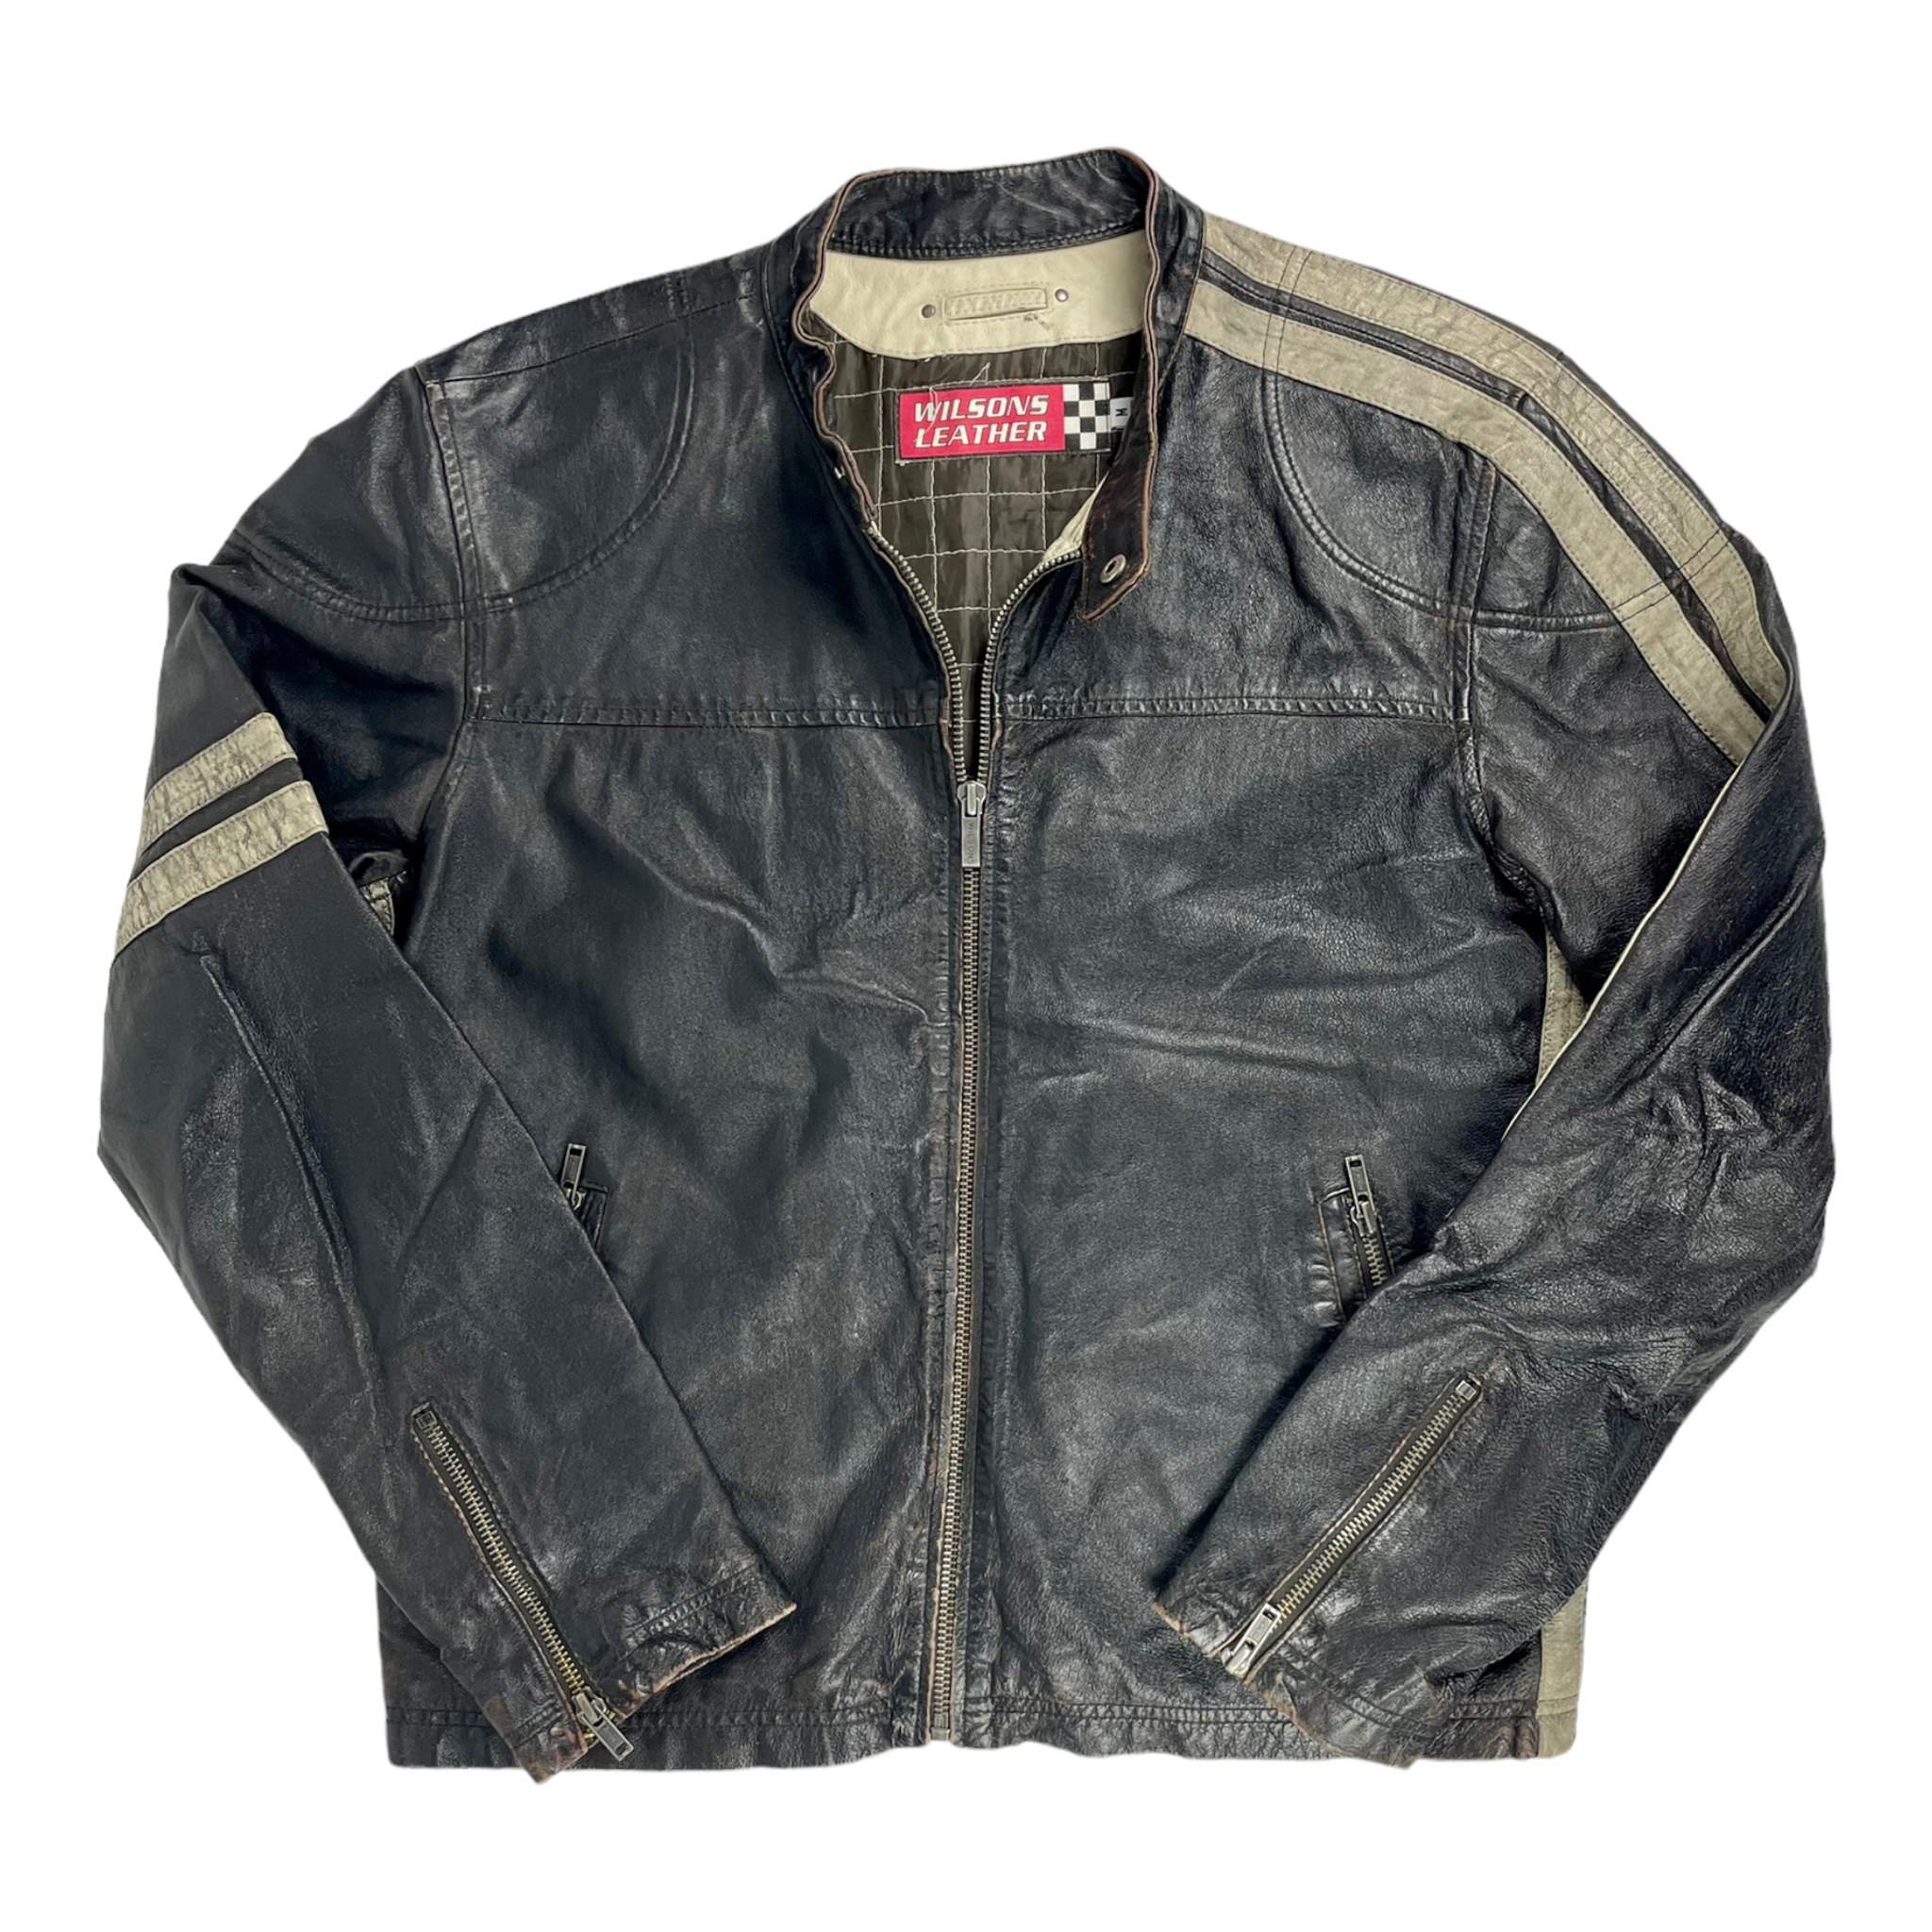 Vintage 90s Motorcycle Jacket - Restorecph